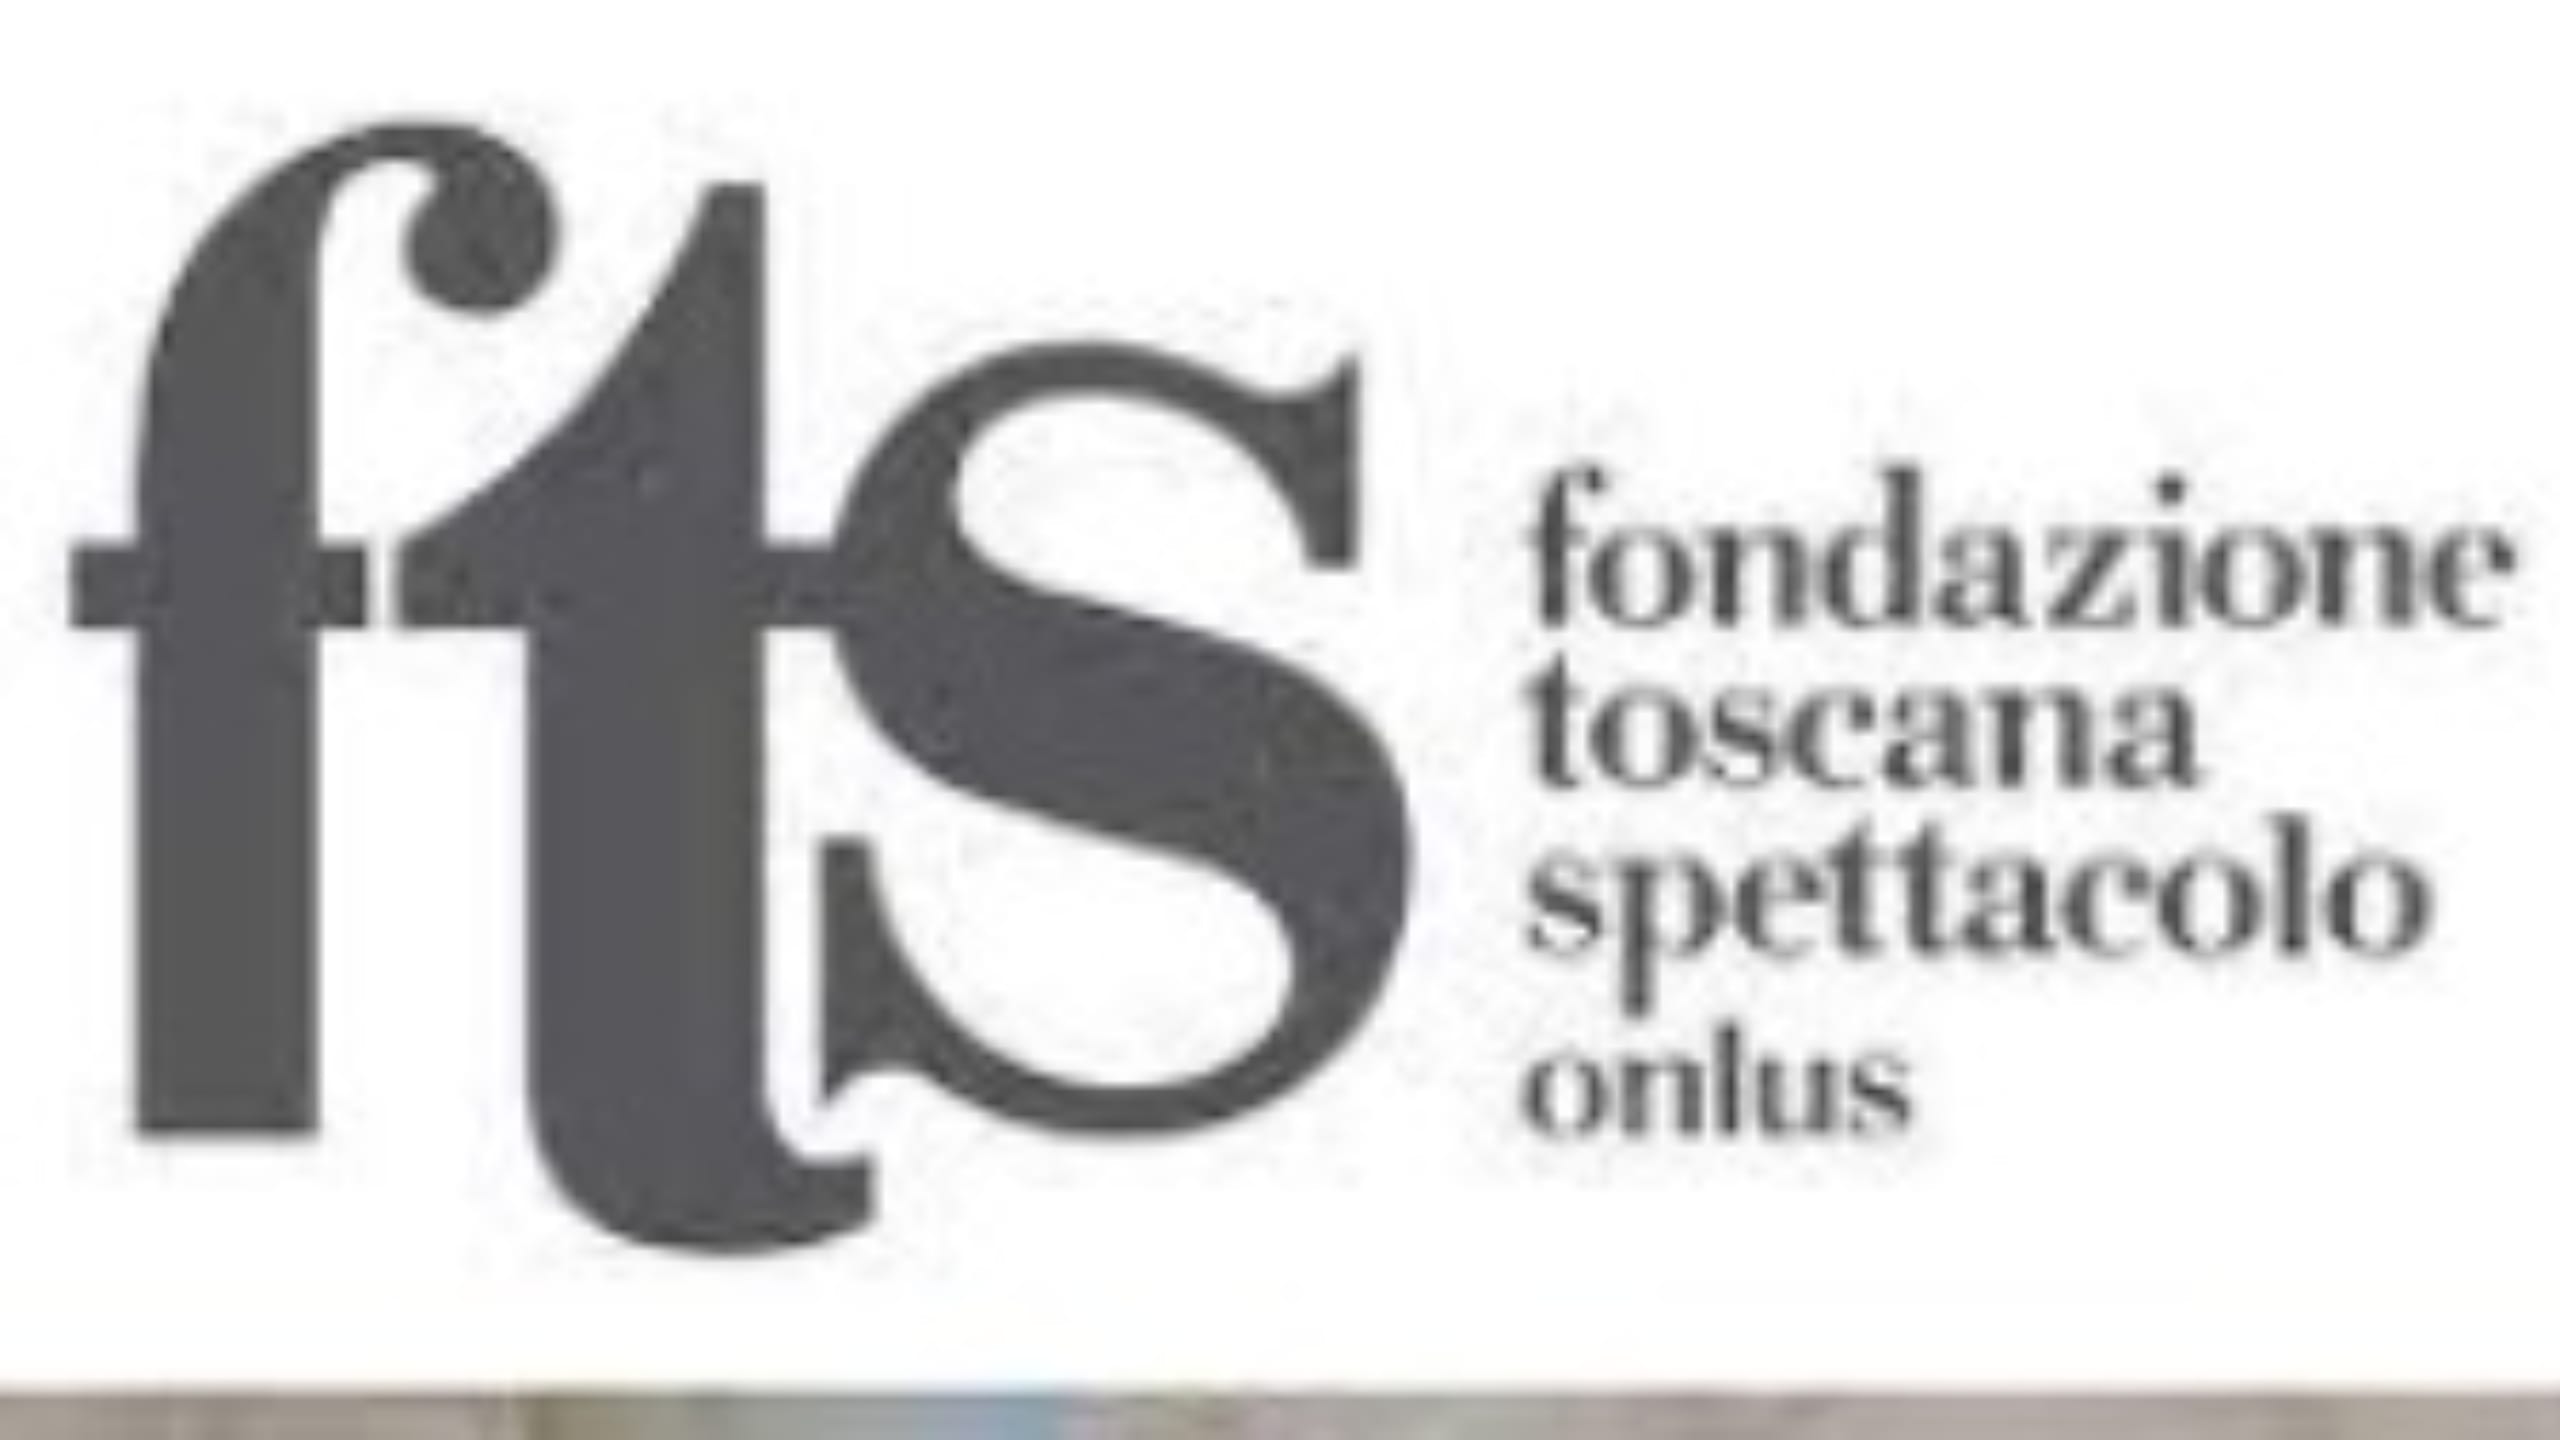 Fondazione Toscana Spettacolo onlus primo Circuito multidisciplinare in Italia